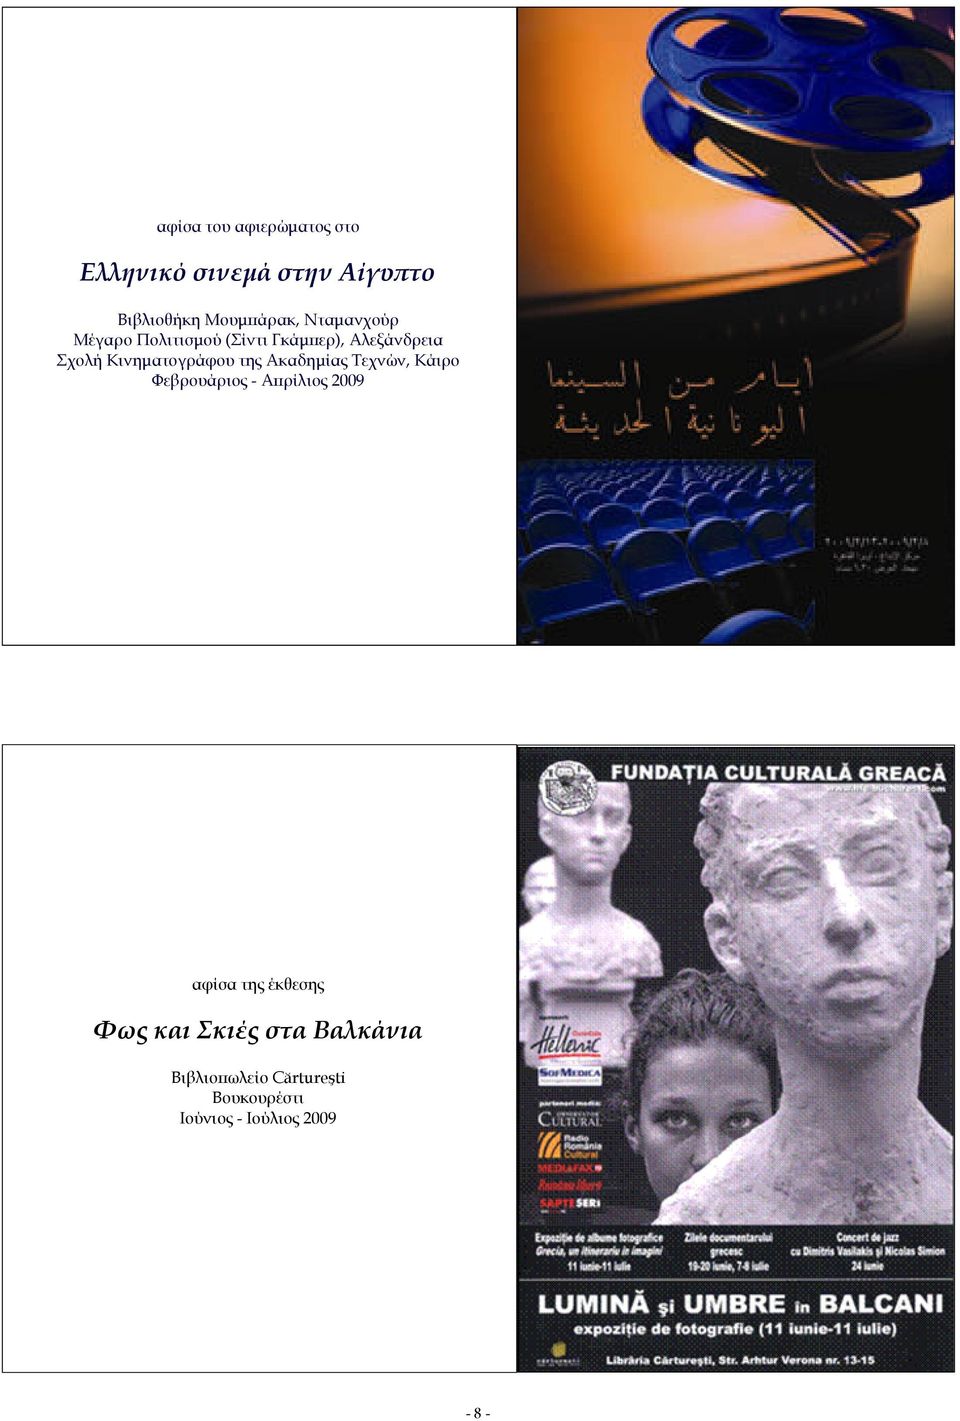 της Ακαδηµίας Τεχνών, Κάιρο Φεβρουάριος - Αϖρίλιος 2009 αφίσα της έκθεσης Φως